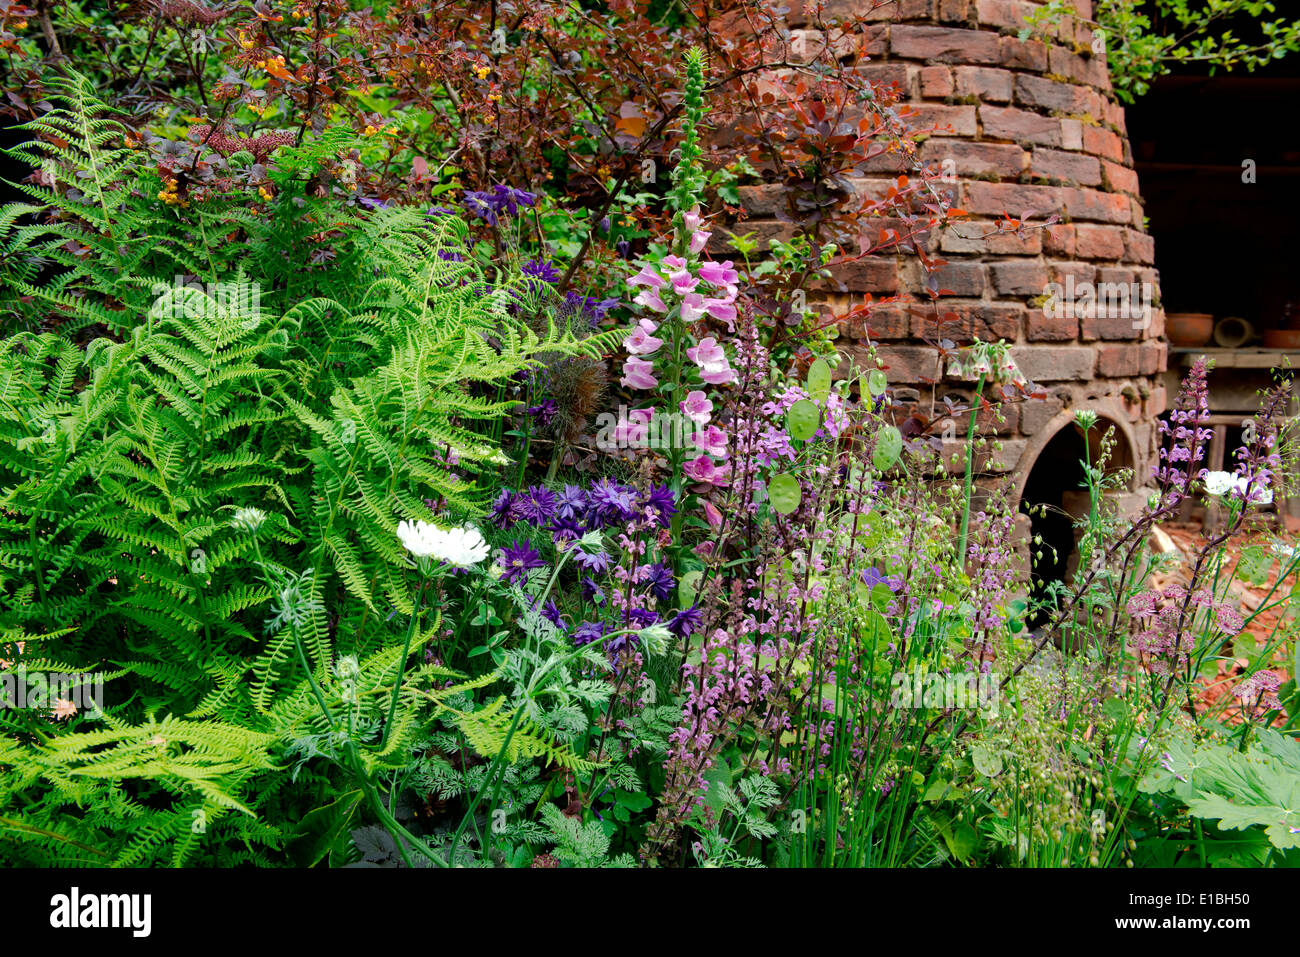 The DialAFlight Potters Garden, gold medal winner in artisan gardens at Chelsea Flower Show 2014 Stock Photo